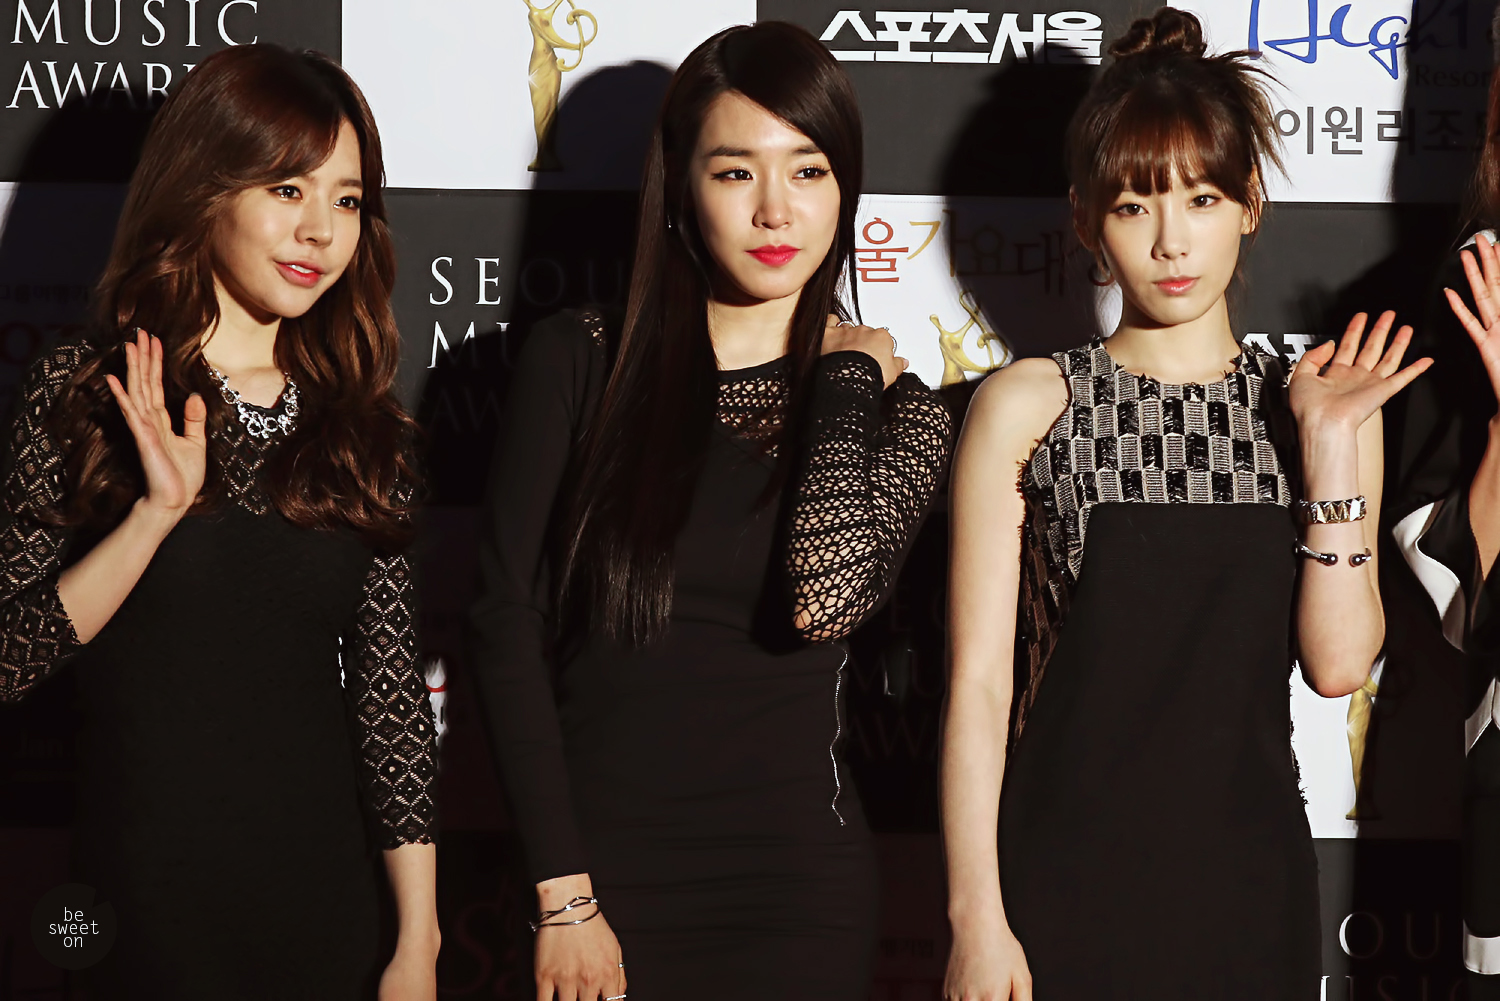 [PIC][23-01-2014]SNSD tham dự "23rd Seoul Music Awards" vào tối nay - Page 4 2373904852E500483269D8